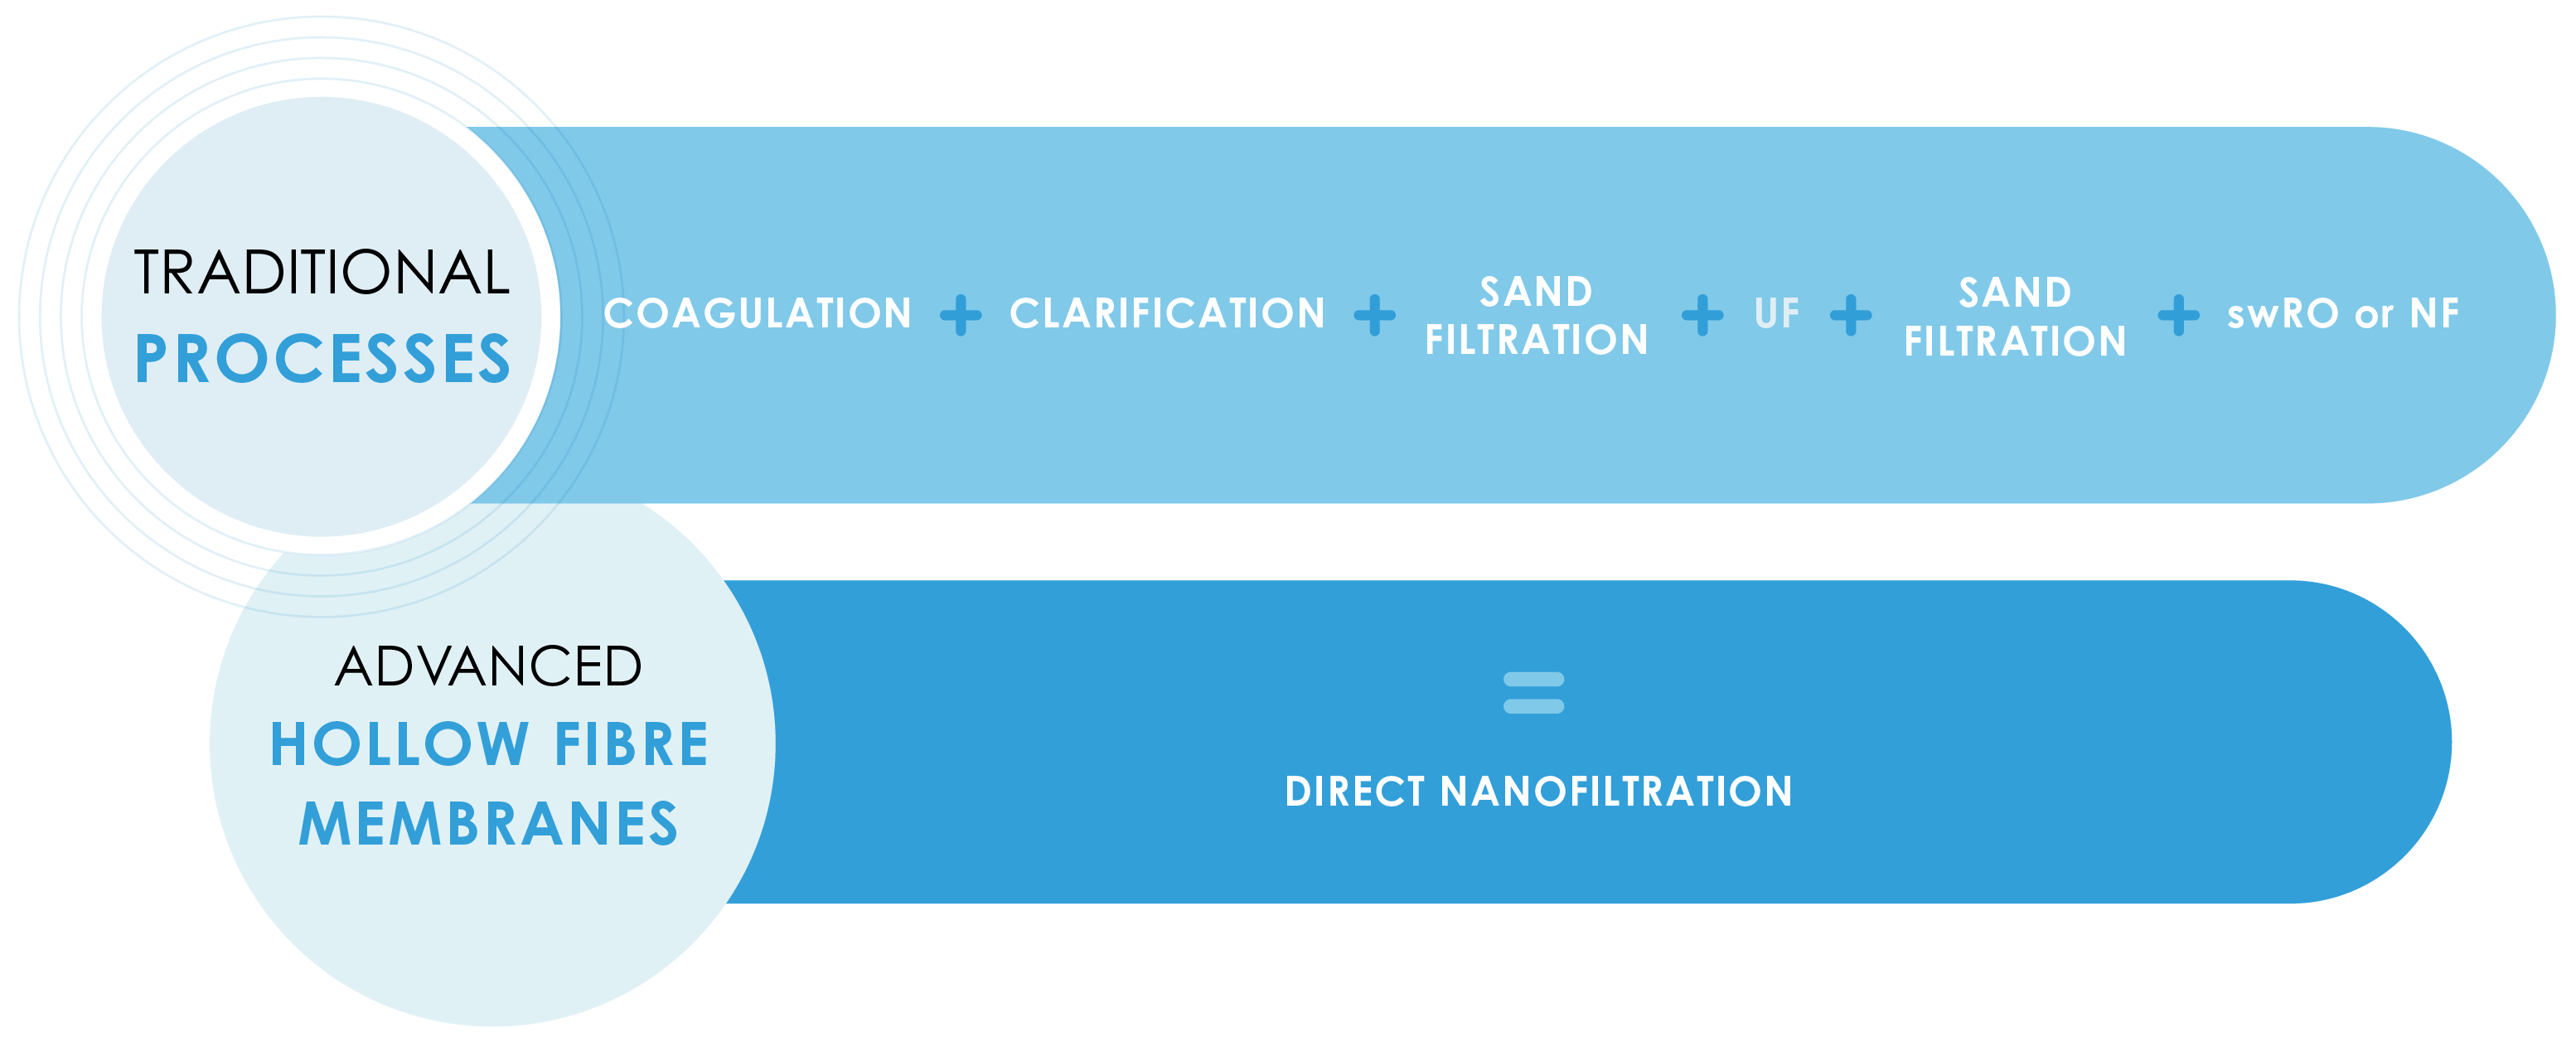 Direct nanofiltration diagram